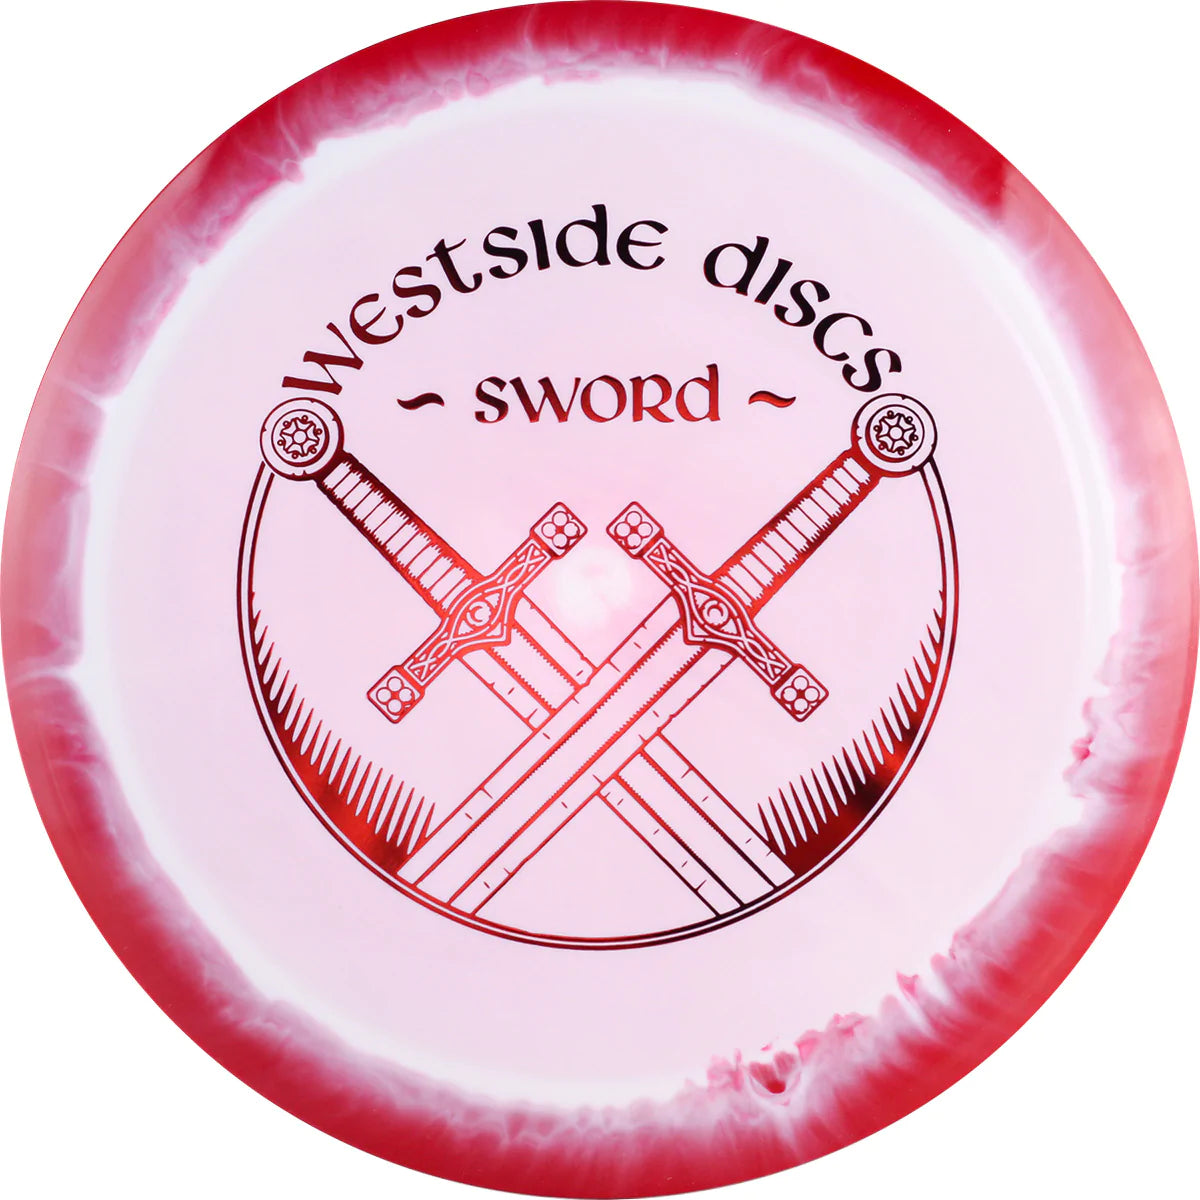 WESTSIDE DISC - VIP Sword